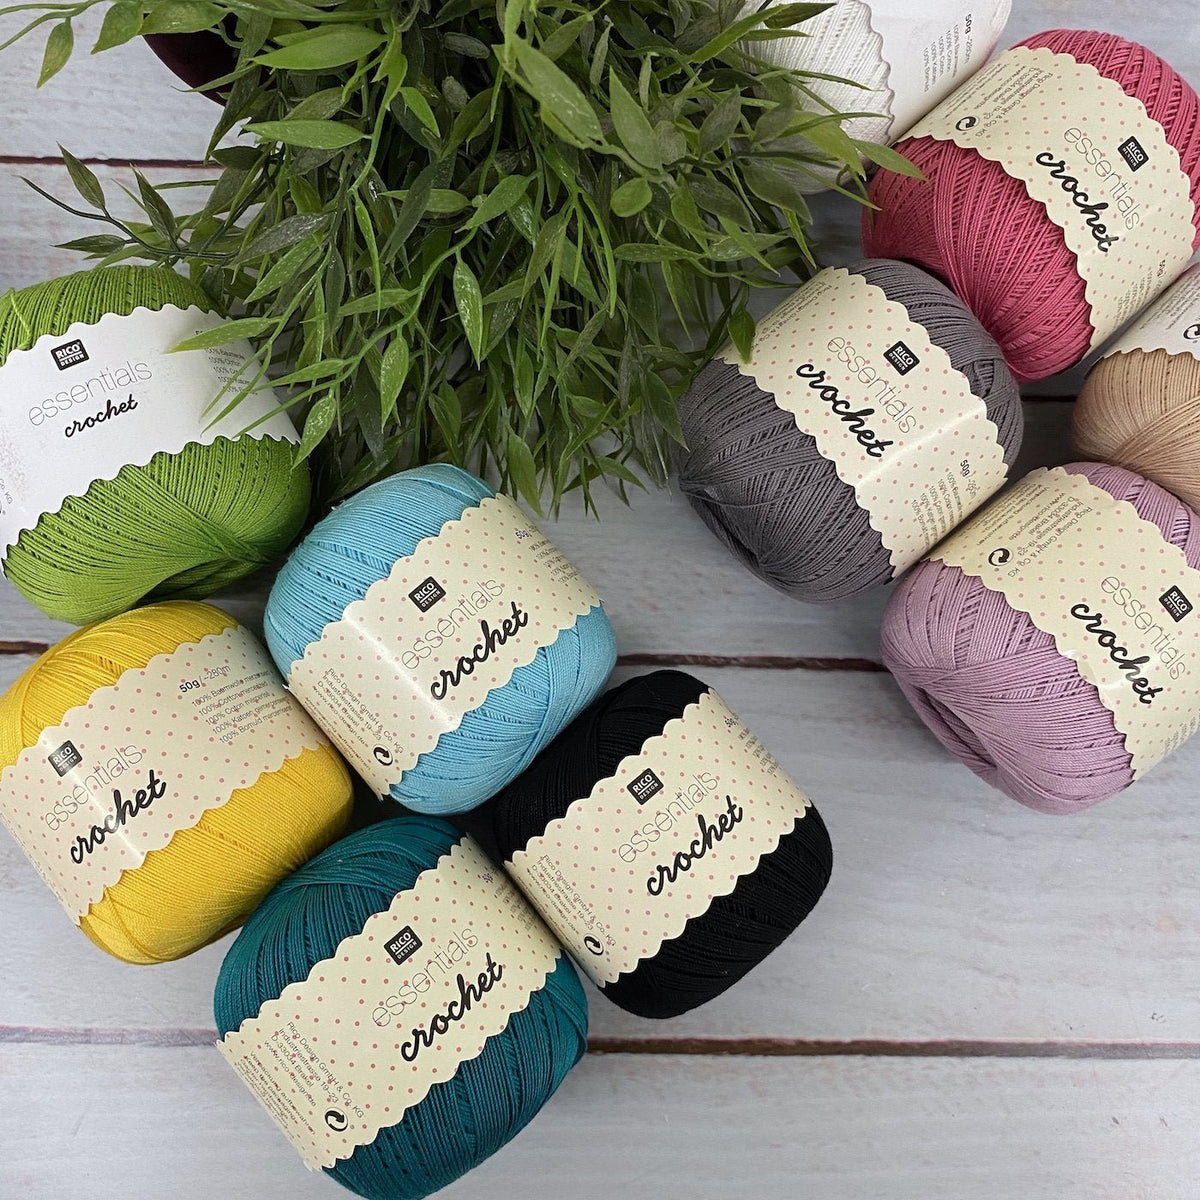 Fil Rico Design - Essentials crochet - 50 gr - 100% coton - Coton